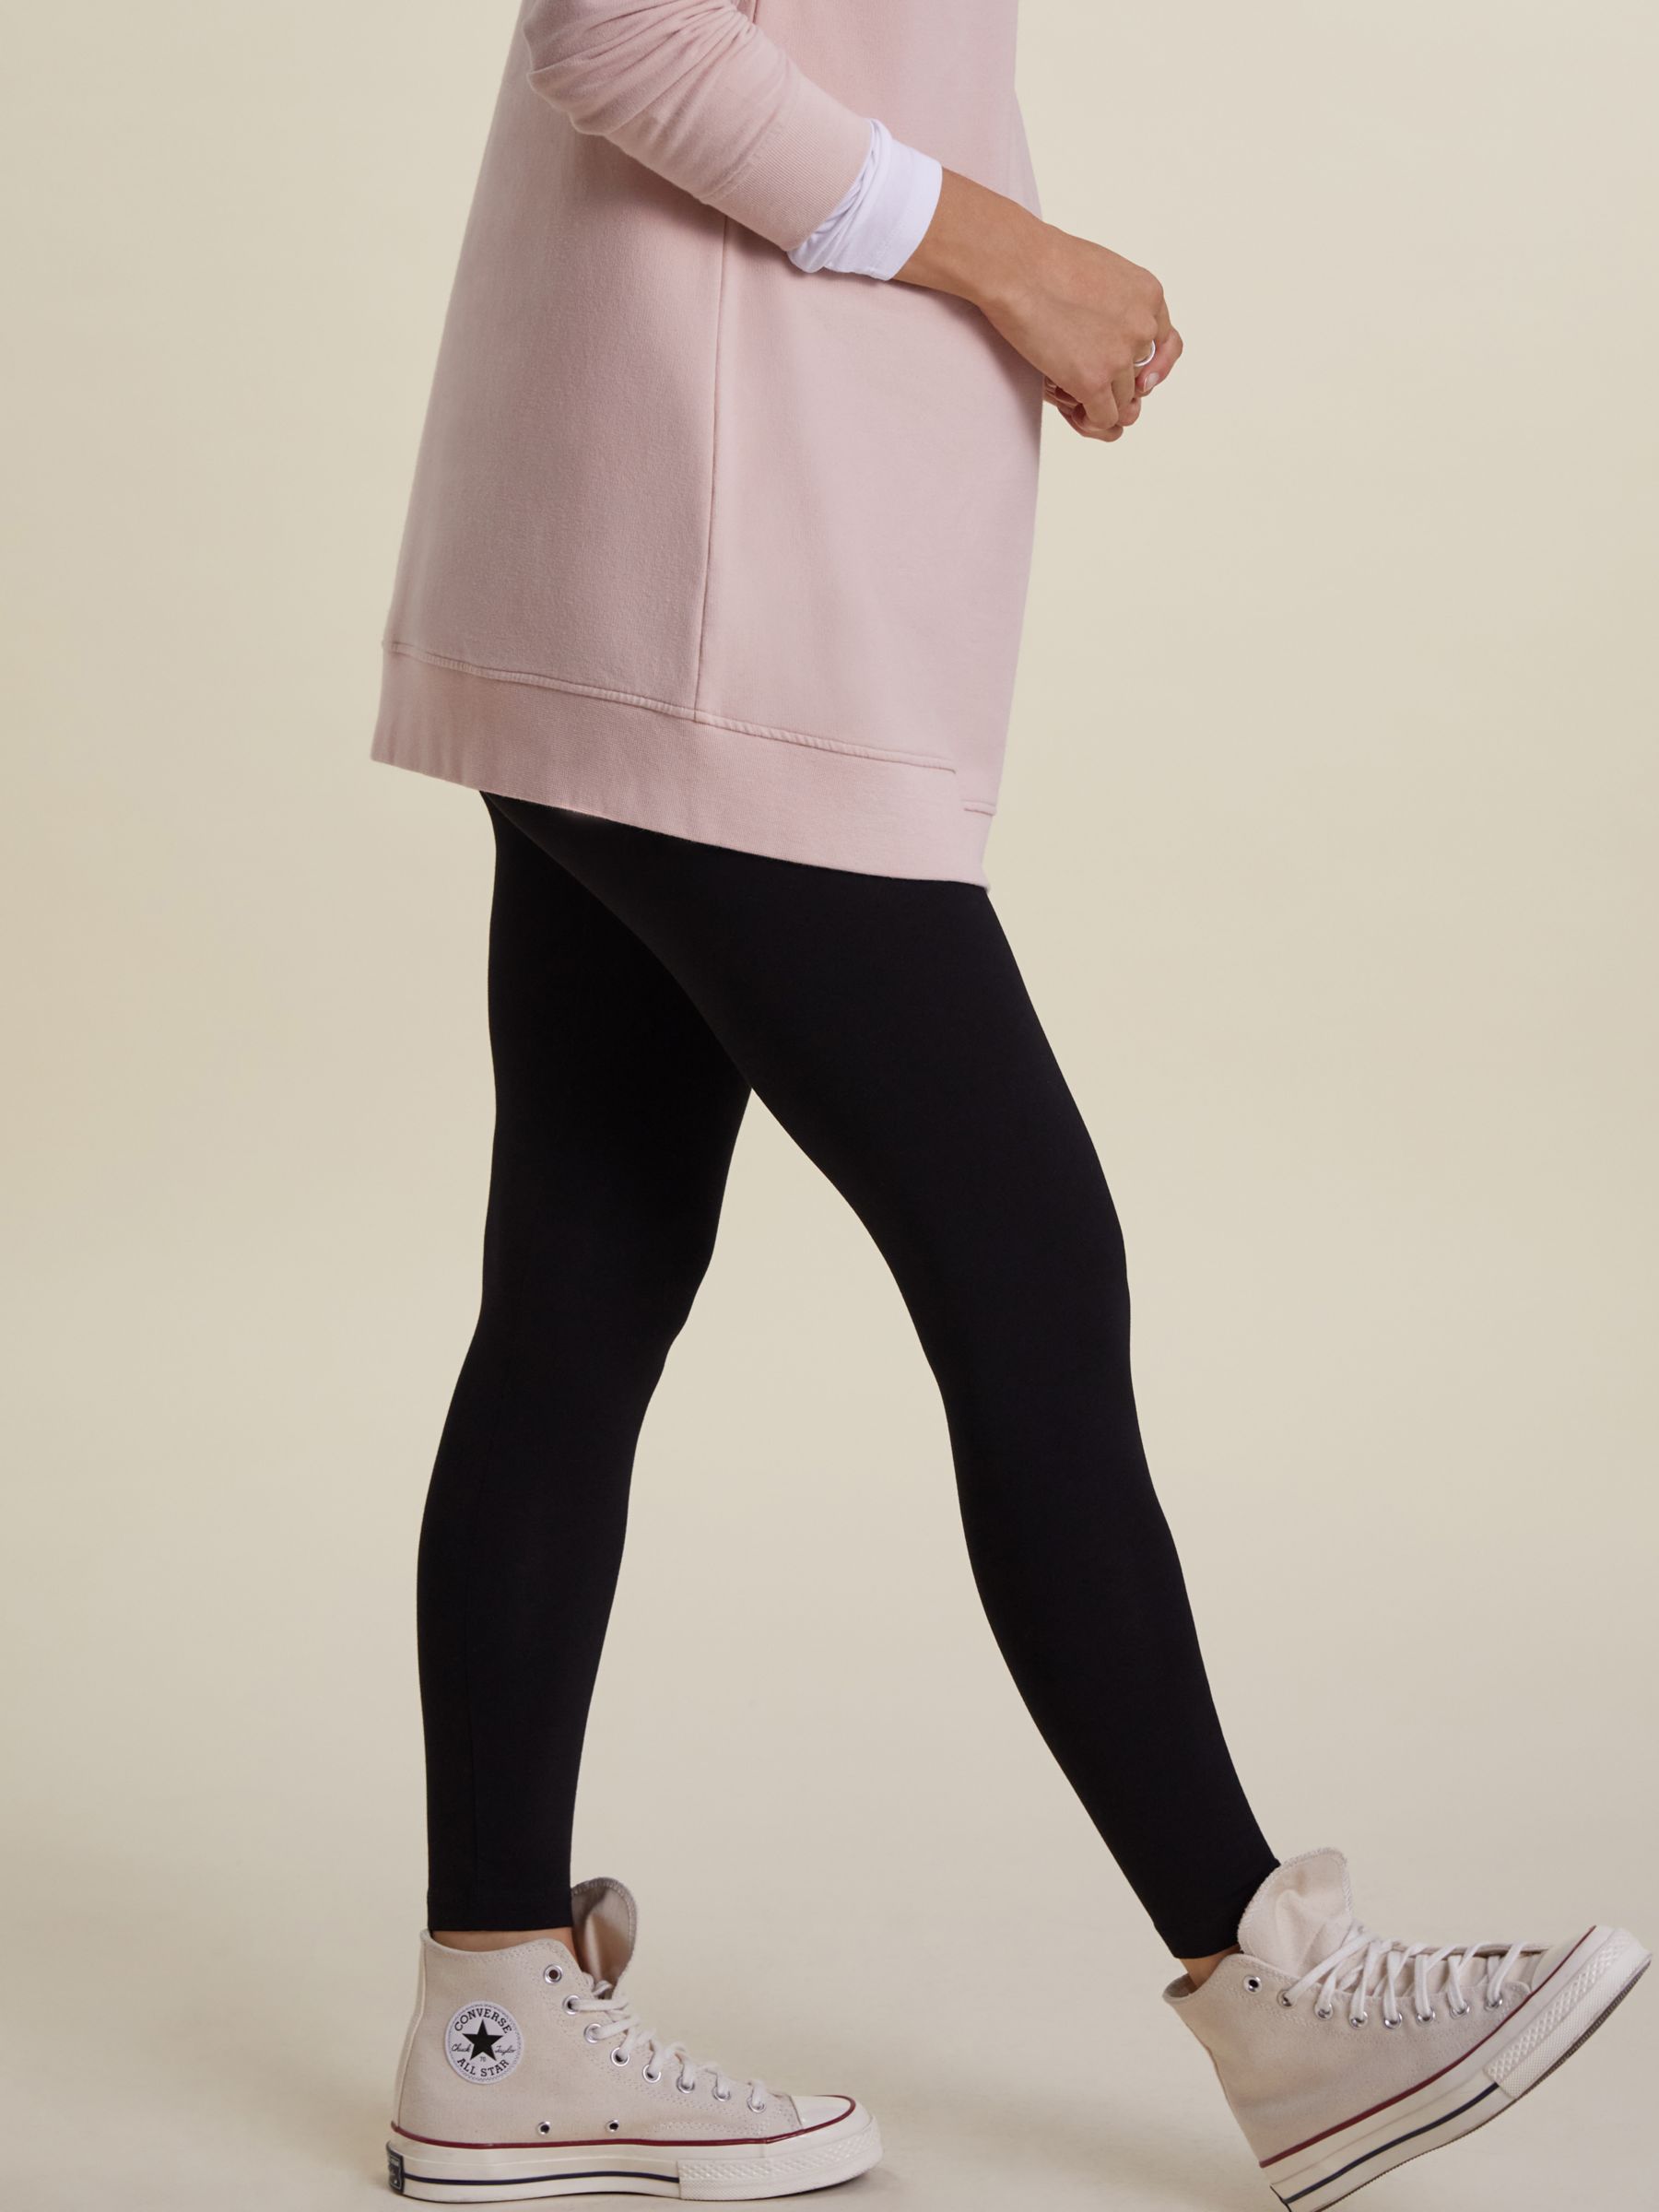 Kerrison Maternity Leggings with LENZING™ ECOVERO™ – Isabella Oliver UK